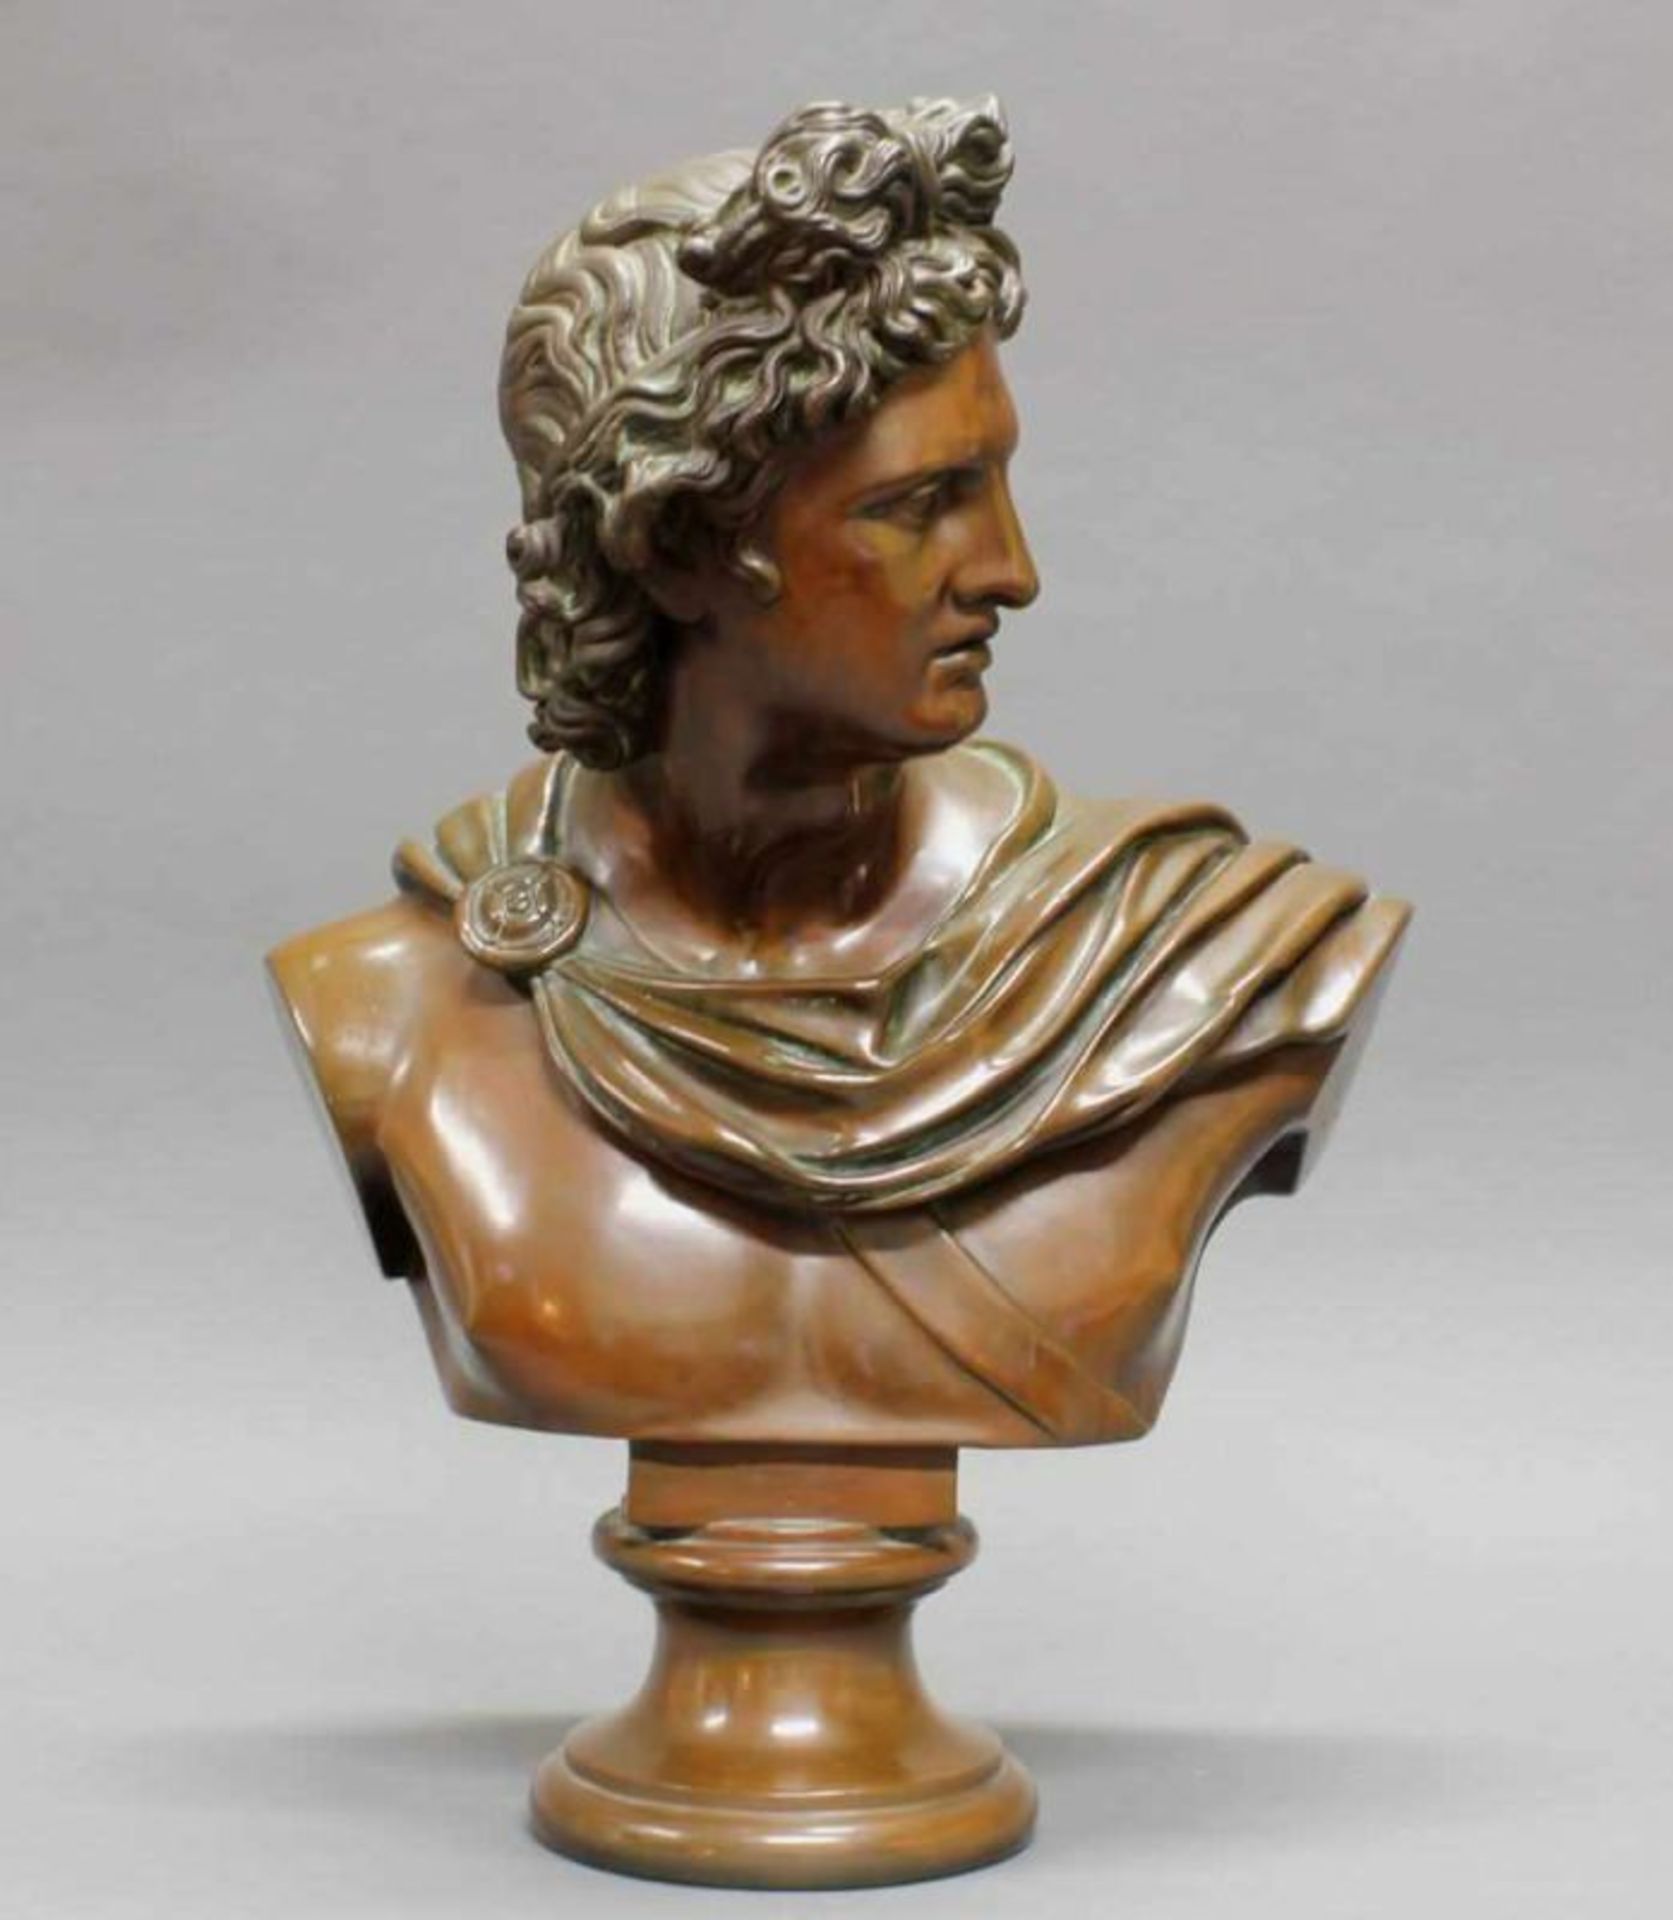 2 Terracottabüsten, bronziert, "Diana", "Apoll", nach antiken Vorbildern, 19./20. Jh., je 54 cm hoch - Image 6 of 8